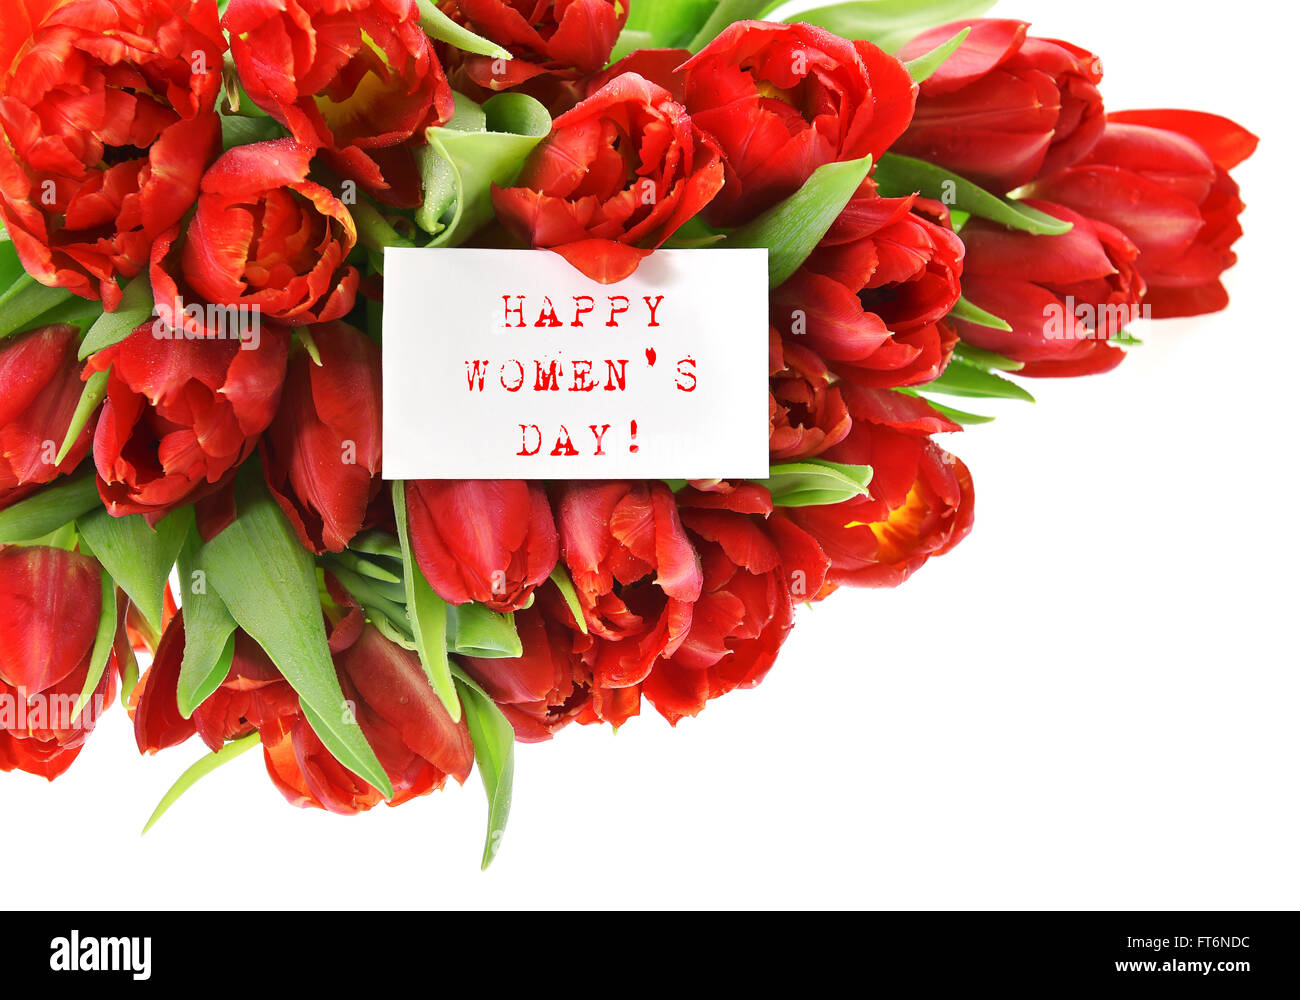 Tulipes rouges avec du papier blanc avec carte d'échantillon de texte professionnels Womens Day ! Fleurs de Printemps Banque D'Images